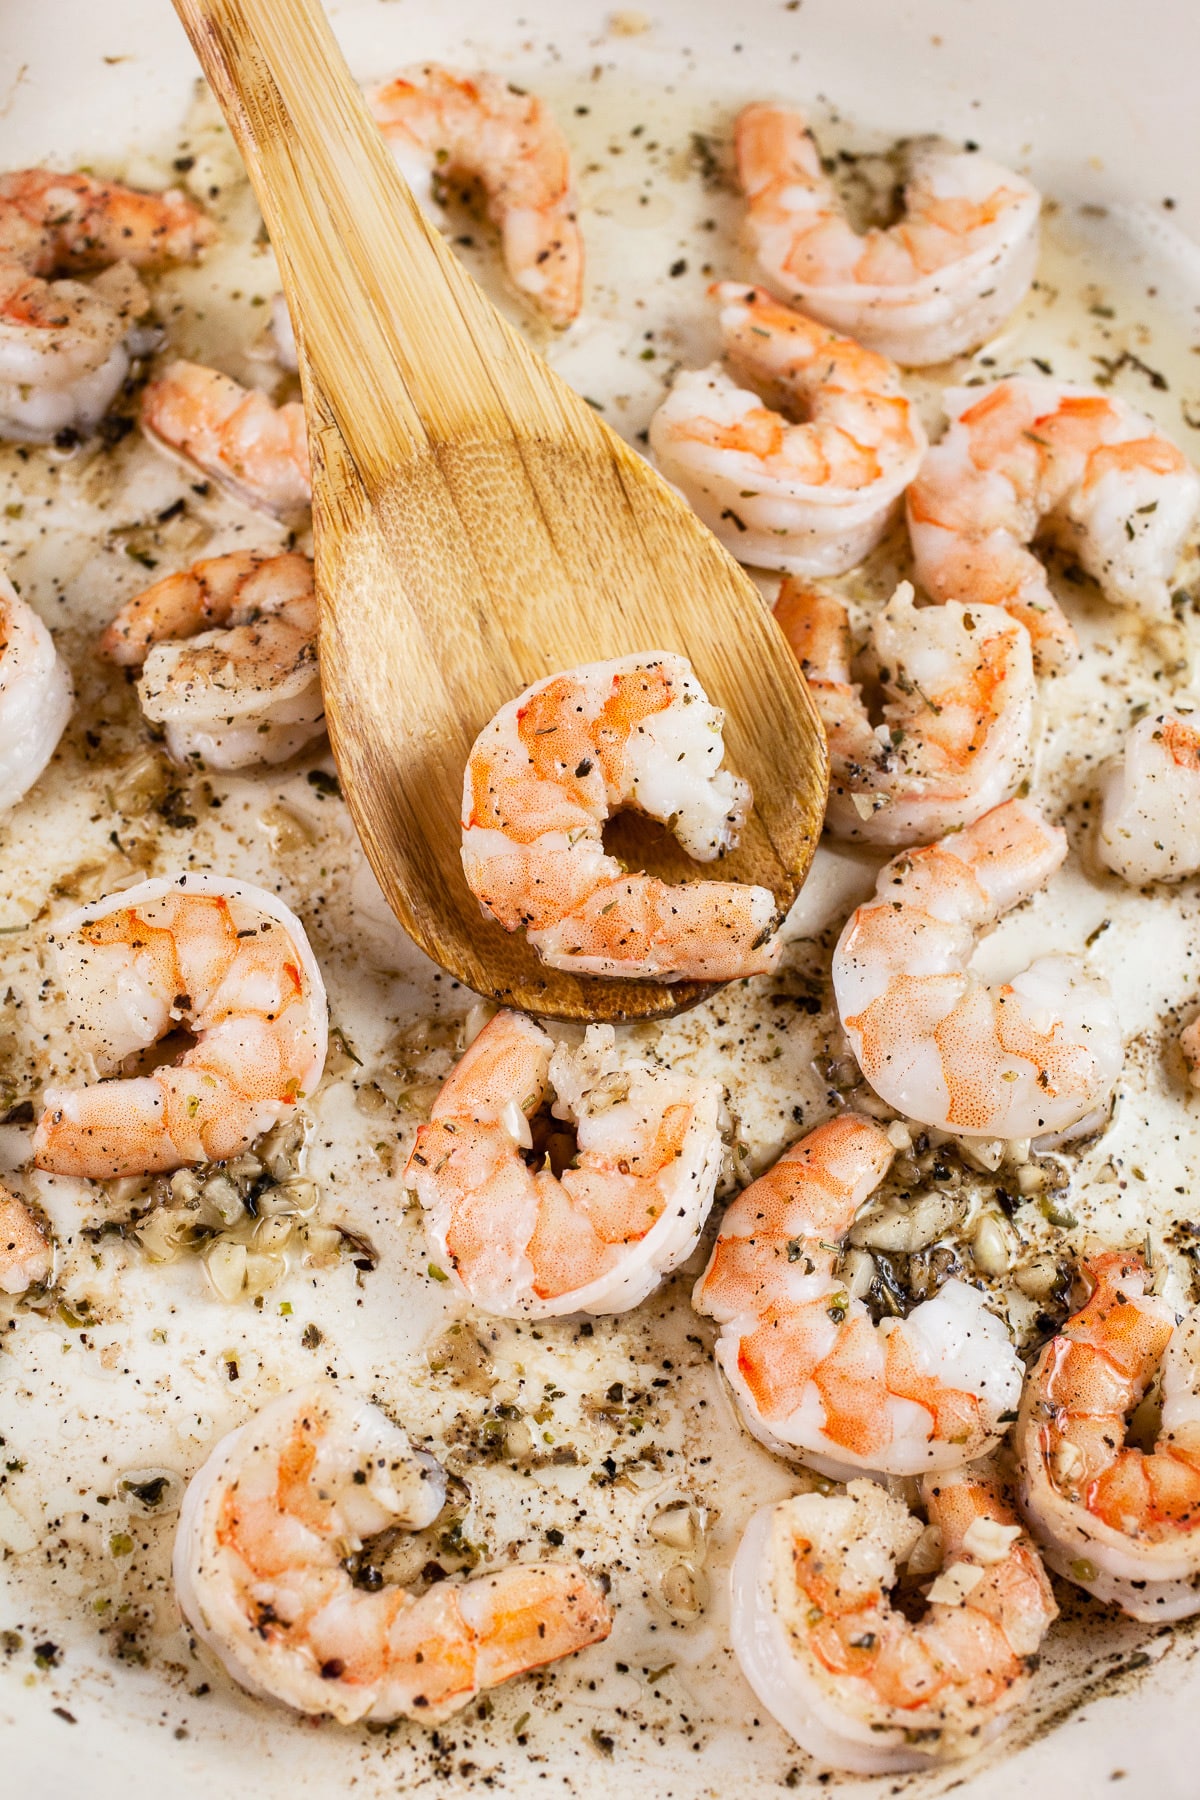 Shrimp sautéed in skillet with olive oil, garlic, salt and pepper.